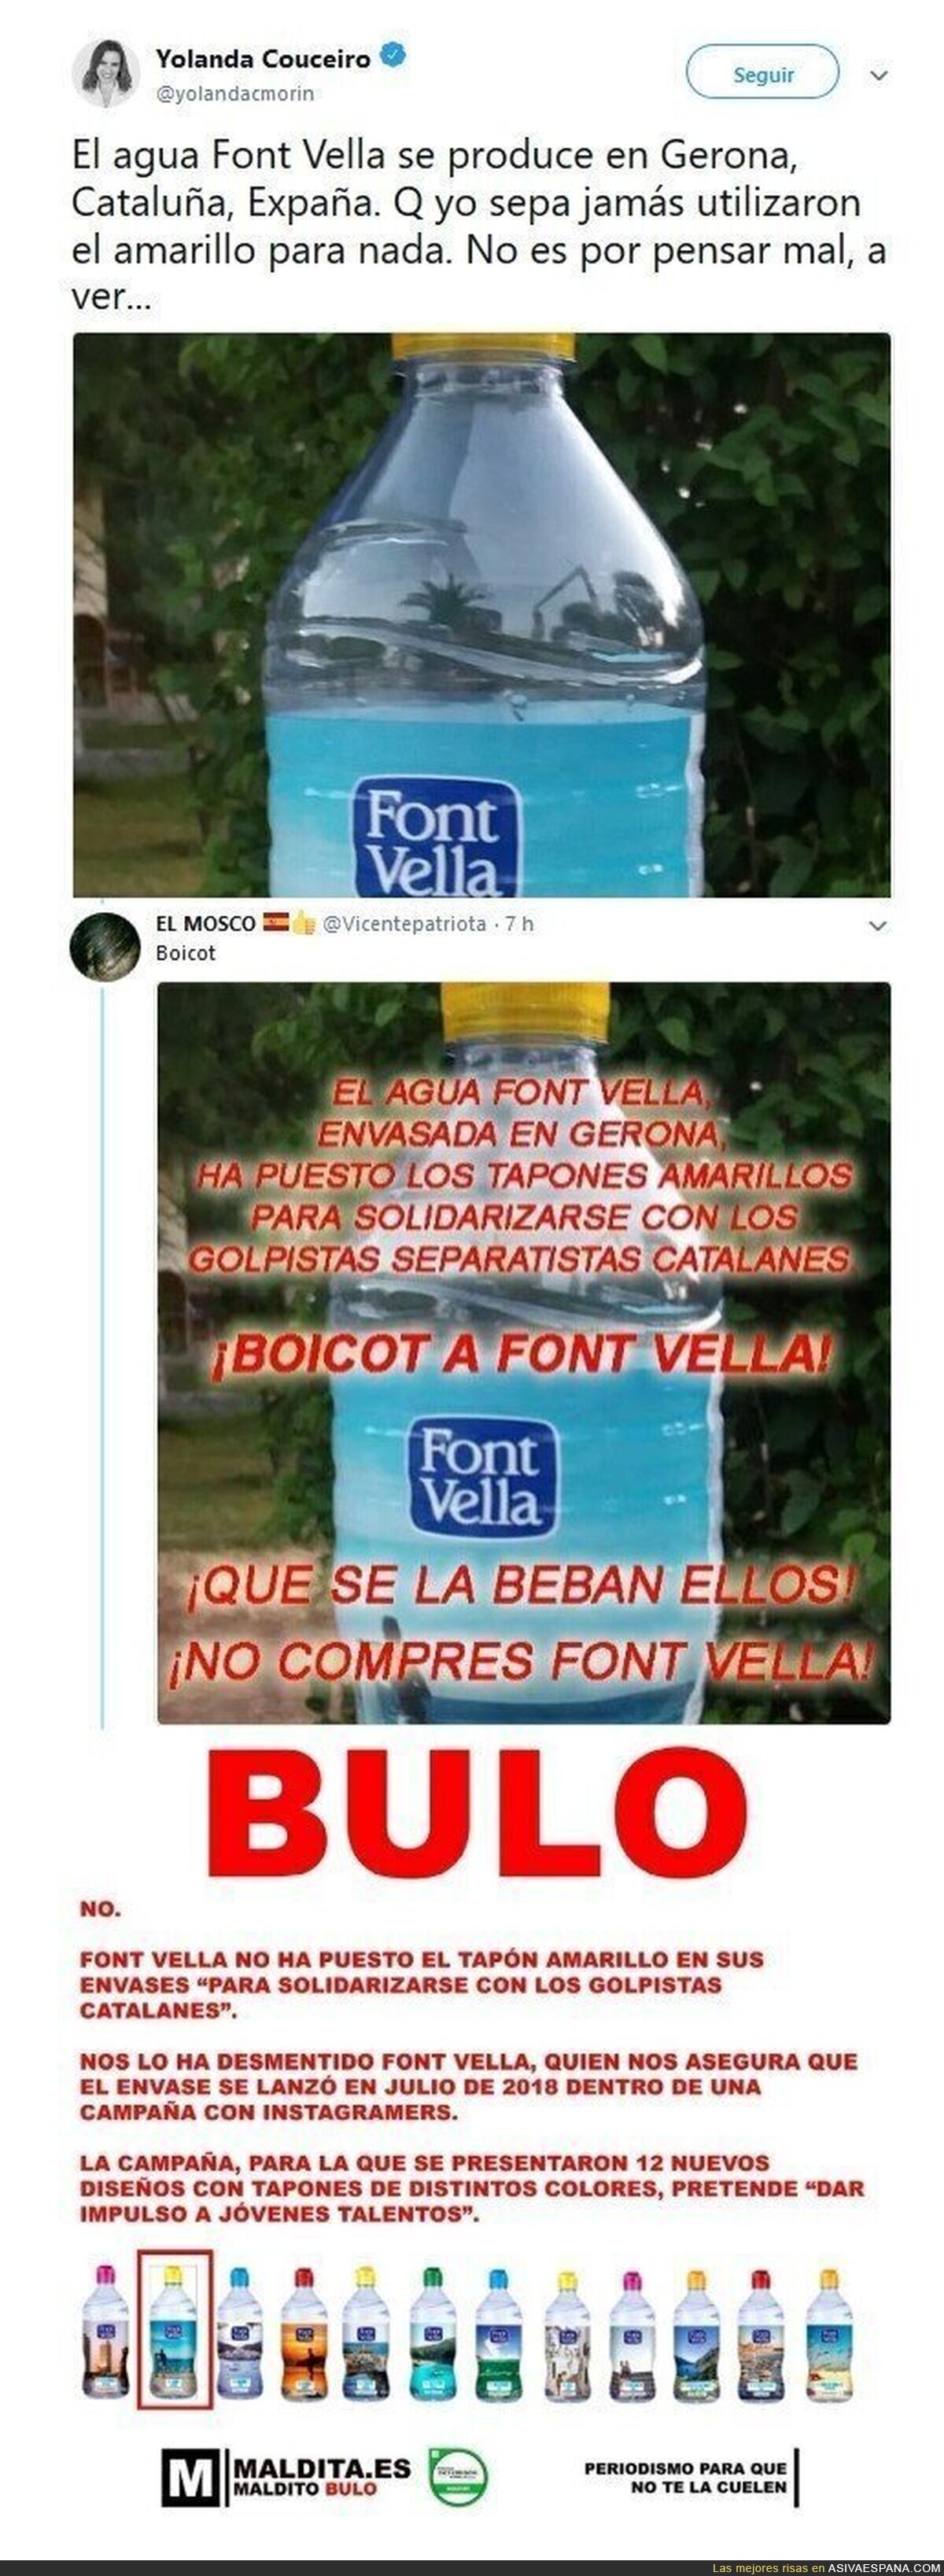 Maldito Bulo intervienen en el caso FONT VELLA para desmentir el tweet de Yolanda Couceiro